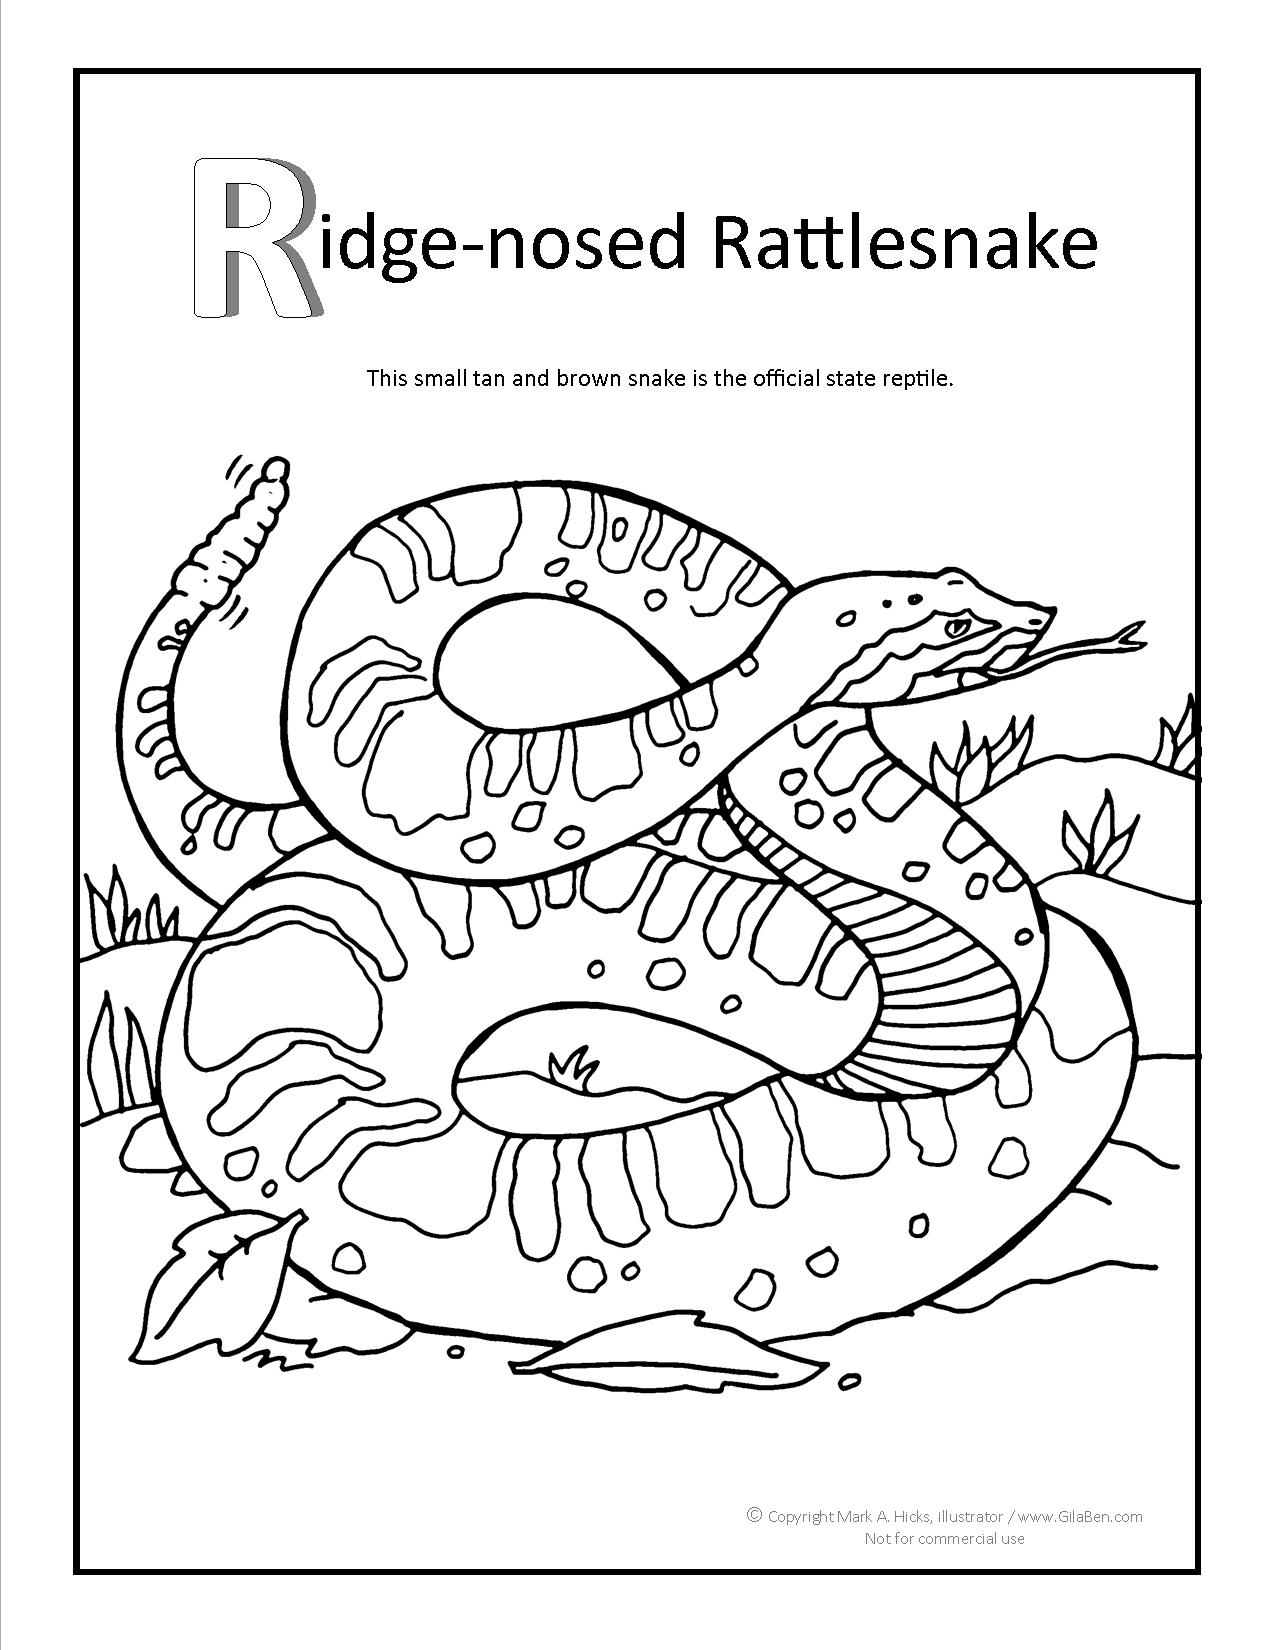 Ridge-nosed Rattlesnake Coloring page